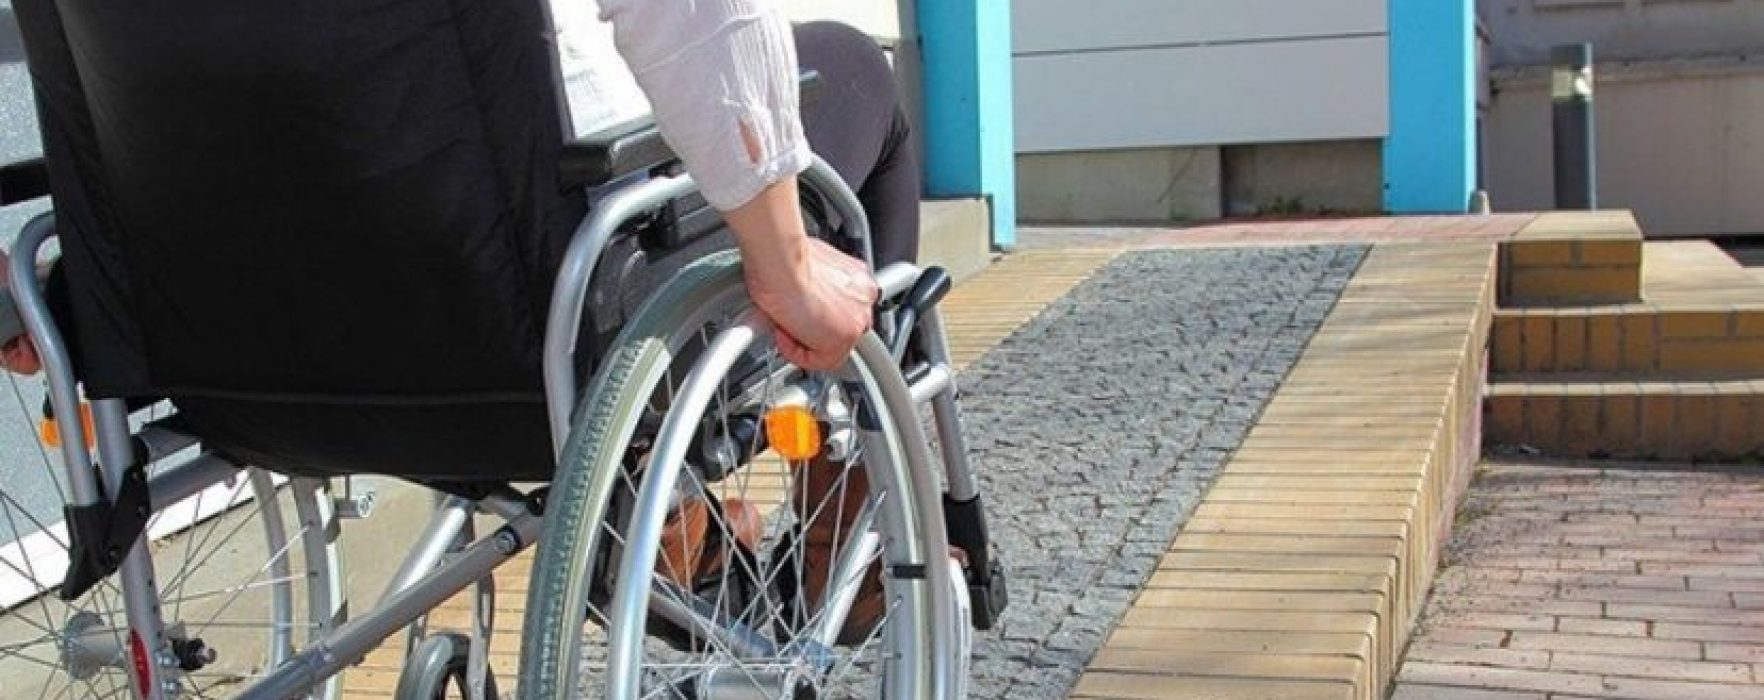 Personas con discapacidad protestaron frente a la Legislatura porteña